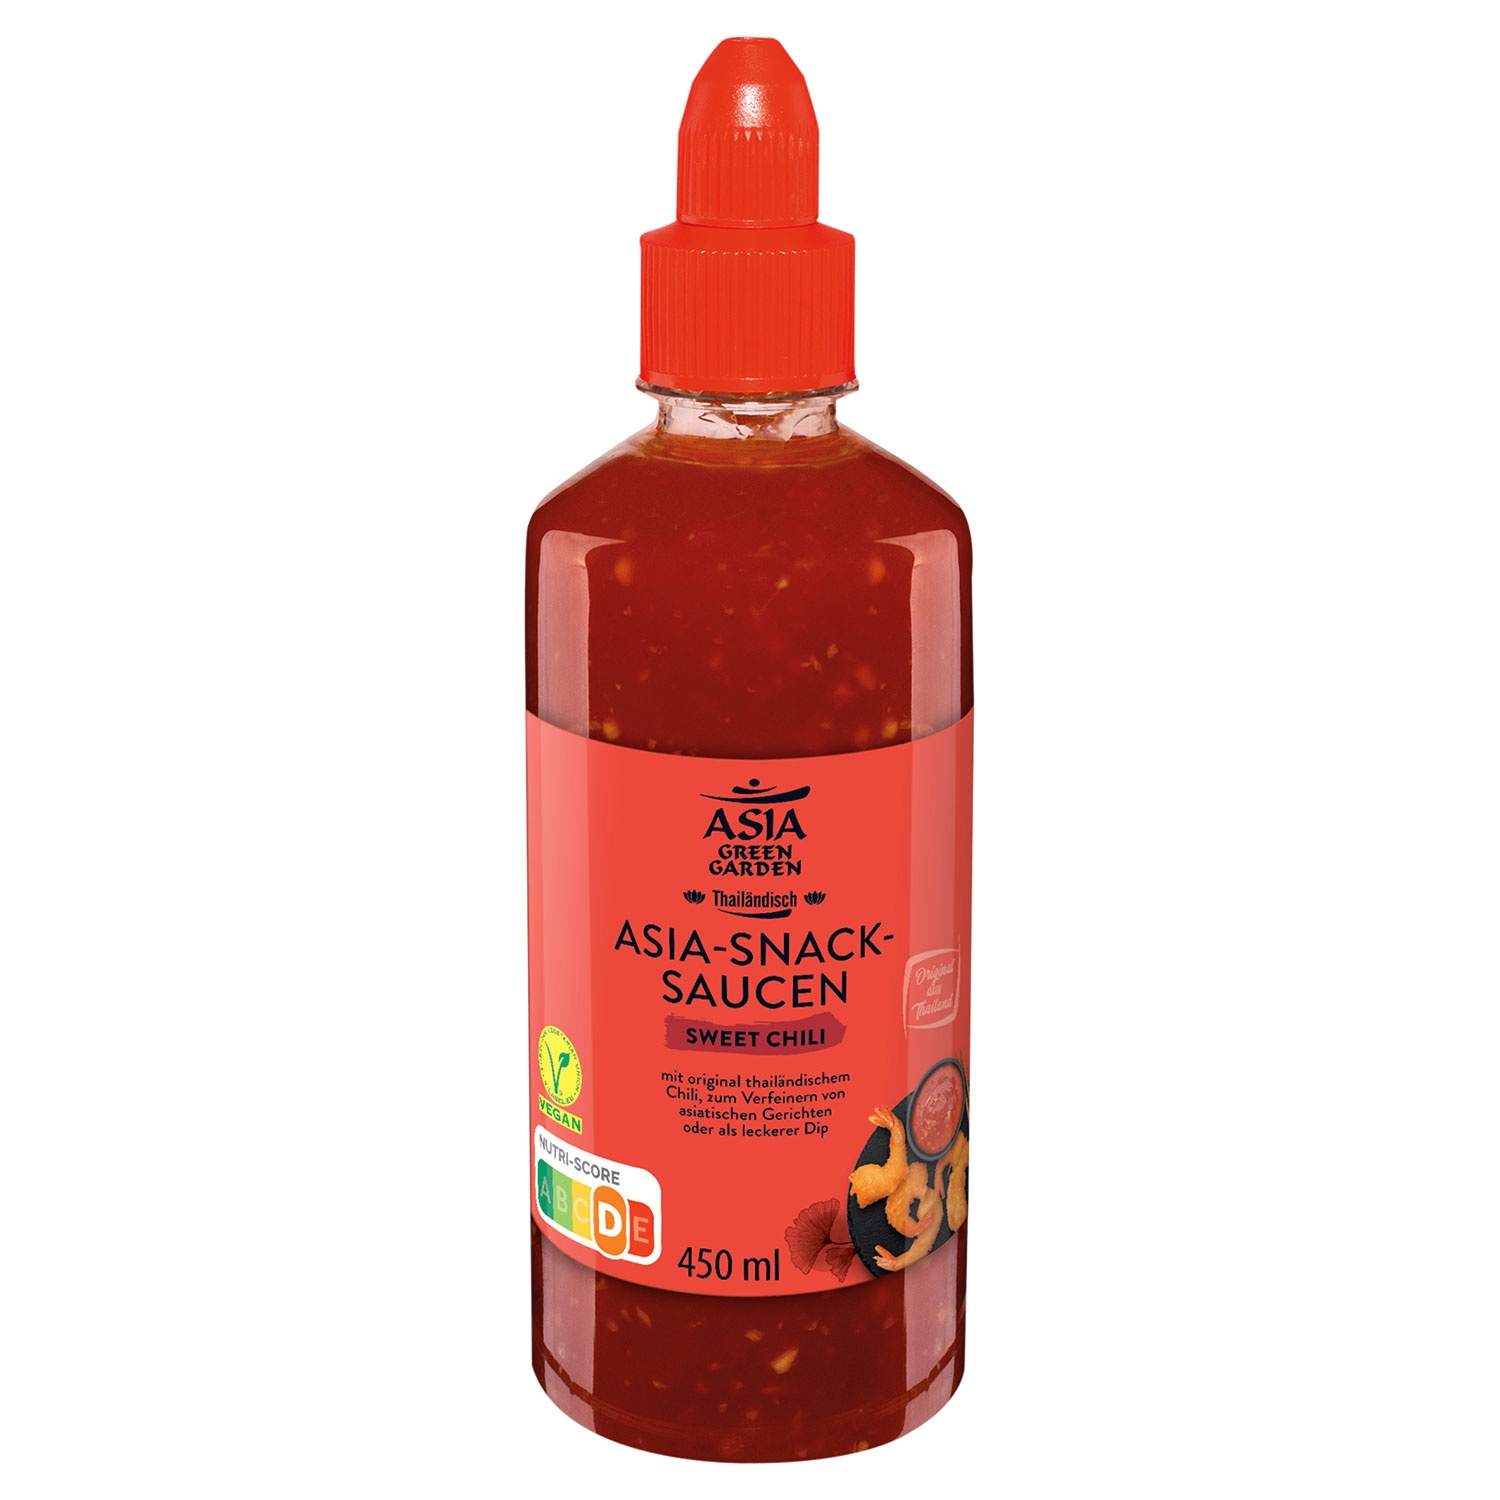 ASIA GREEN GARDEN Asia-Snack-Sauce 450 ml